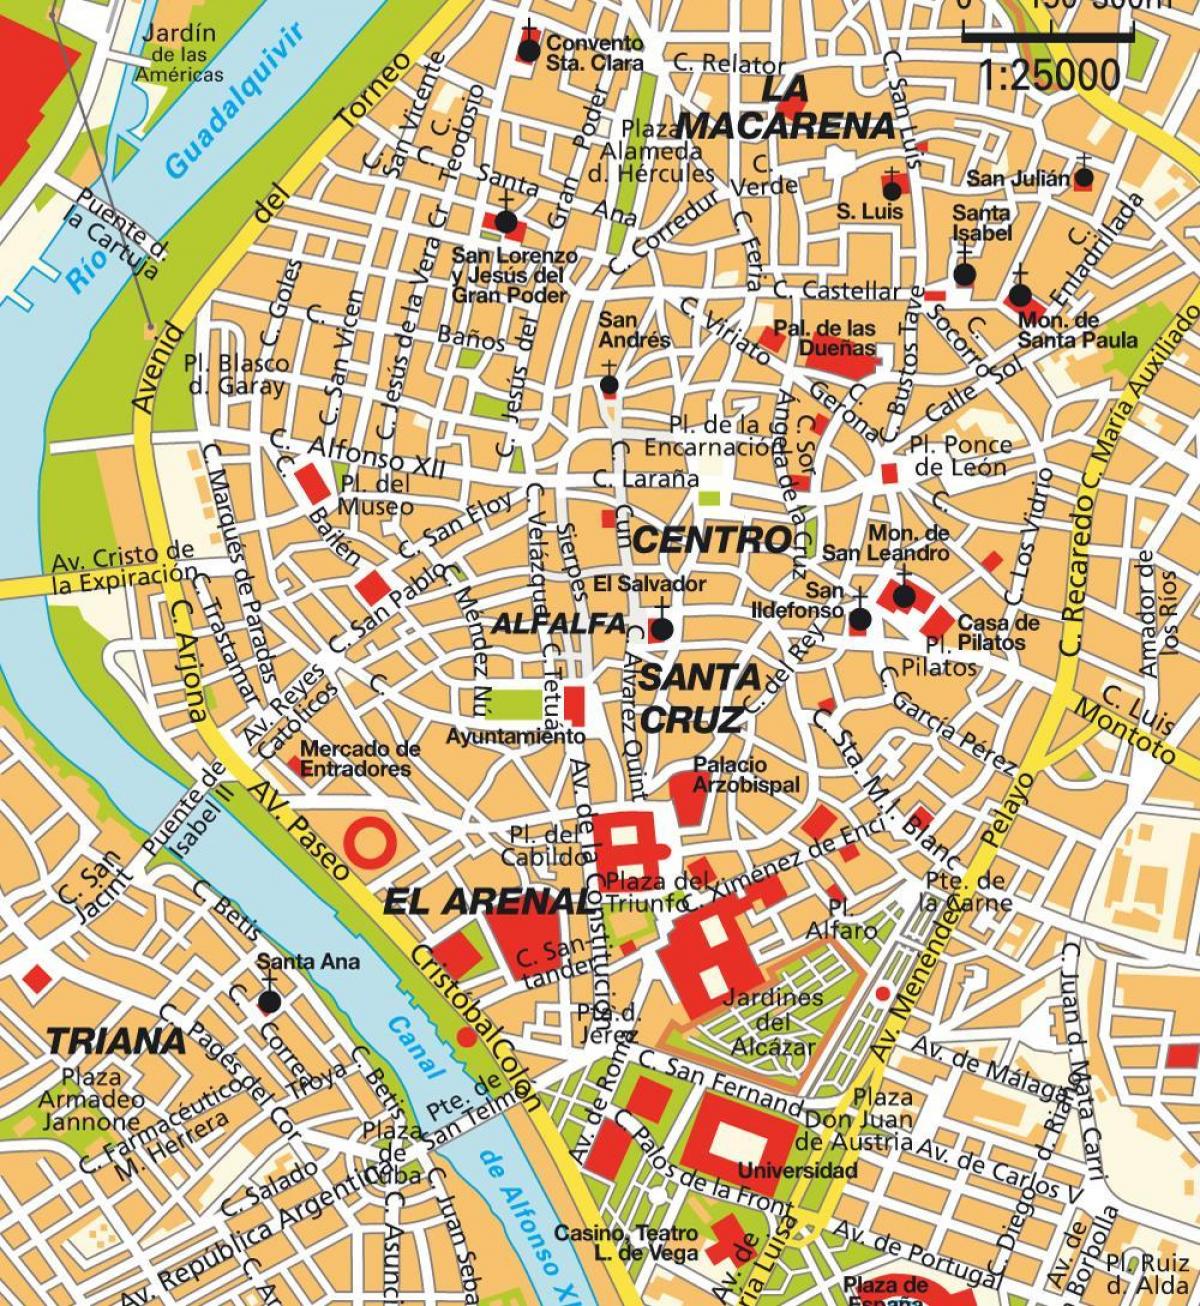 Mappa del centro di Siviglia